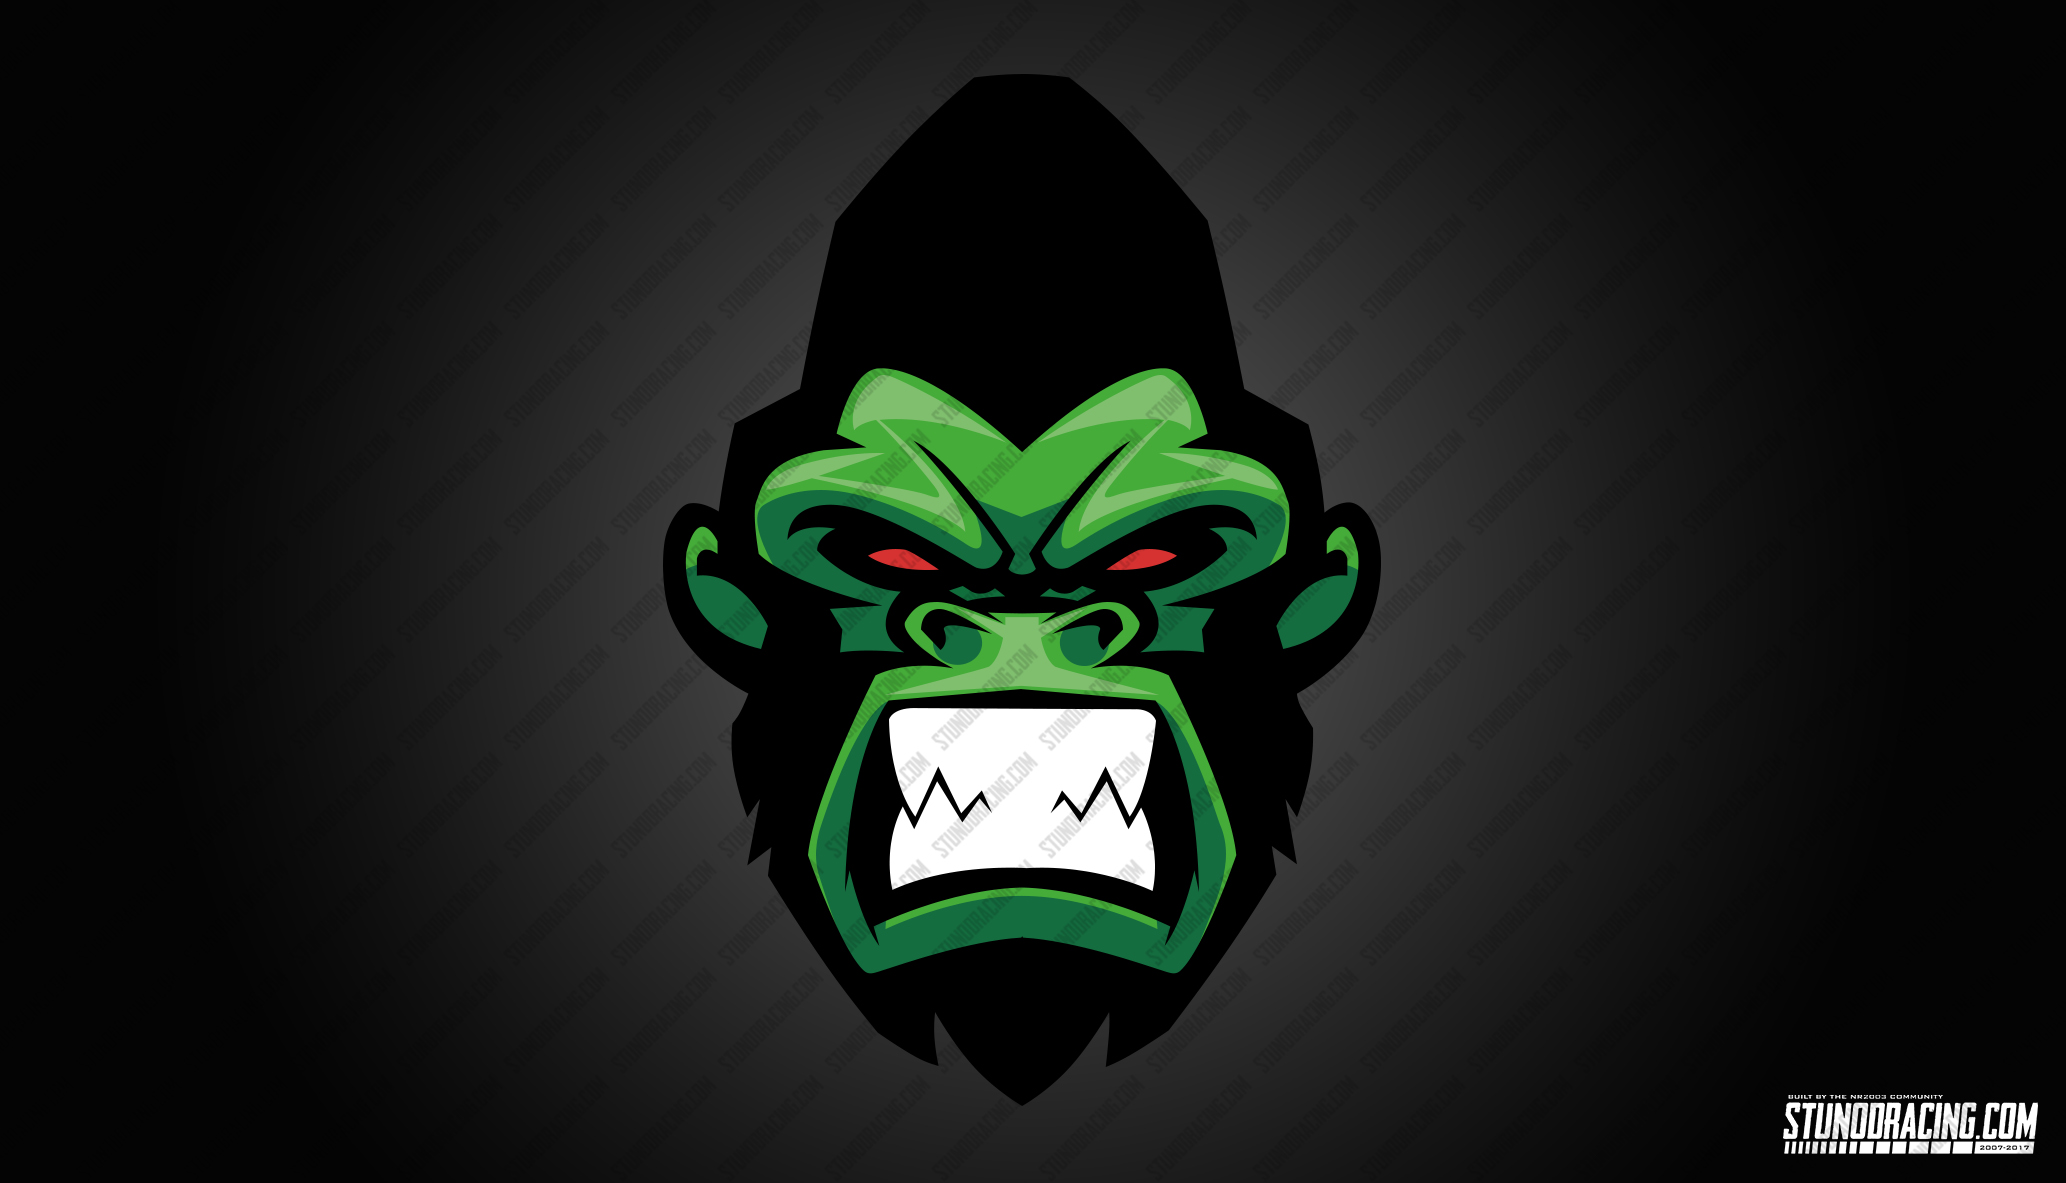 StunodRacing_Gorilla_Logo.jpg